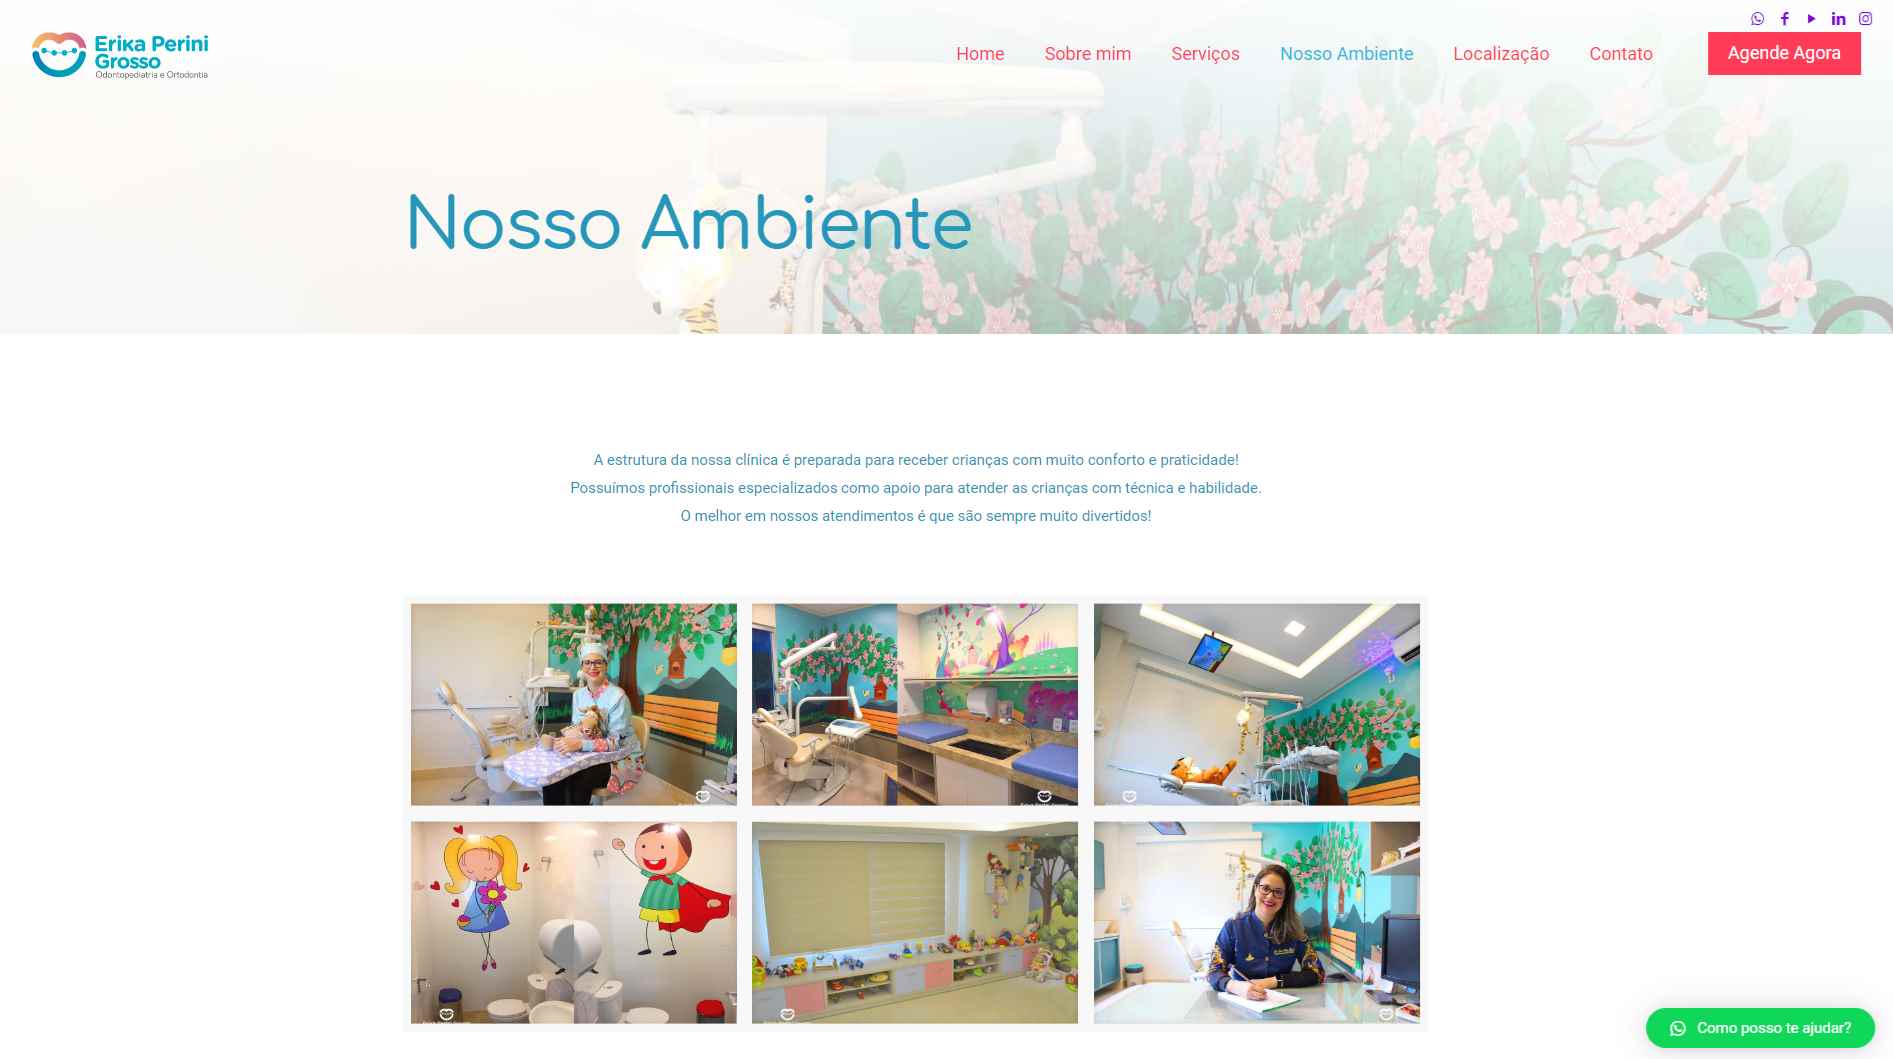 Odontopediatra Érika Perini Grosso | Desenvolvimento de Website